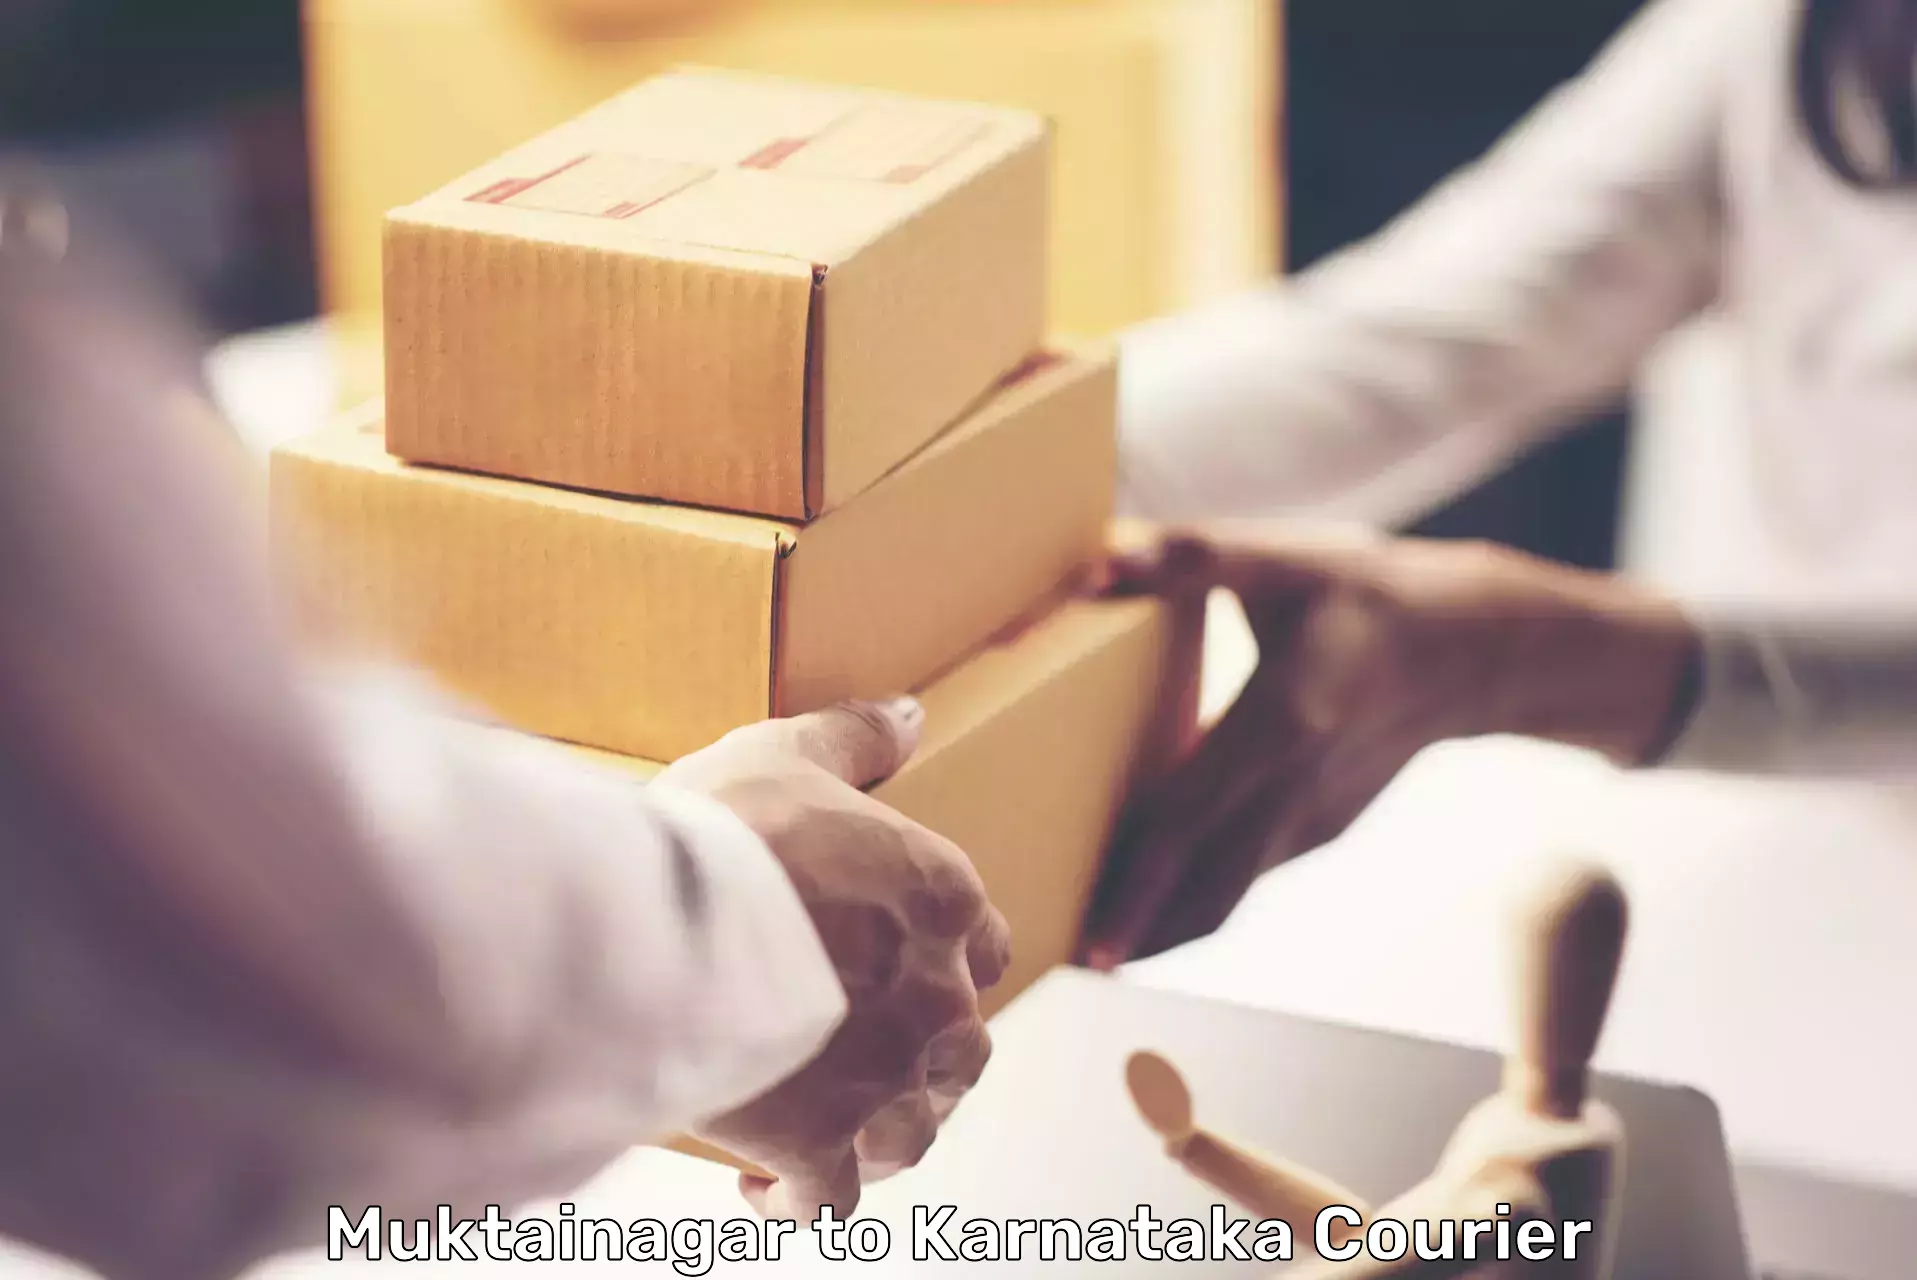 Global shipping solutions Muktainagar to Ramanathapura